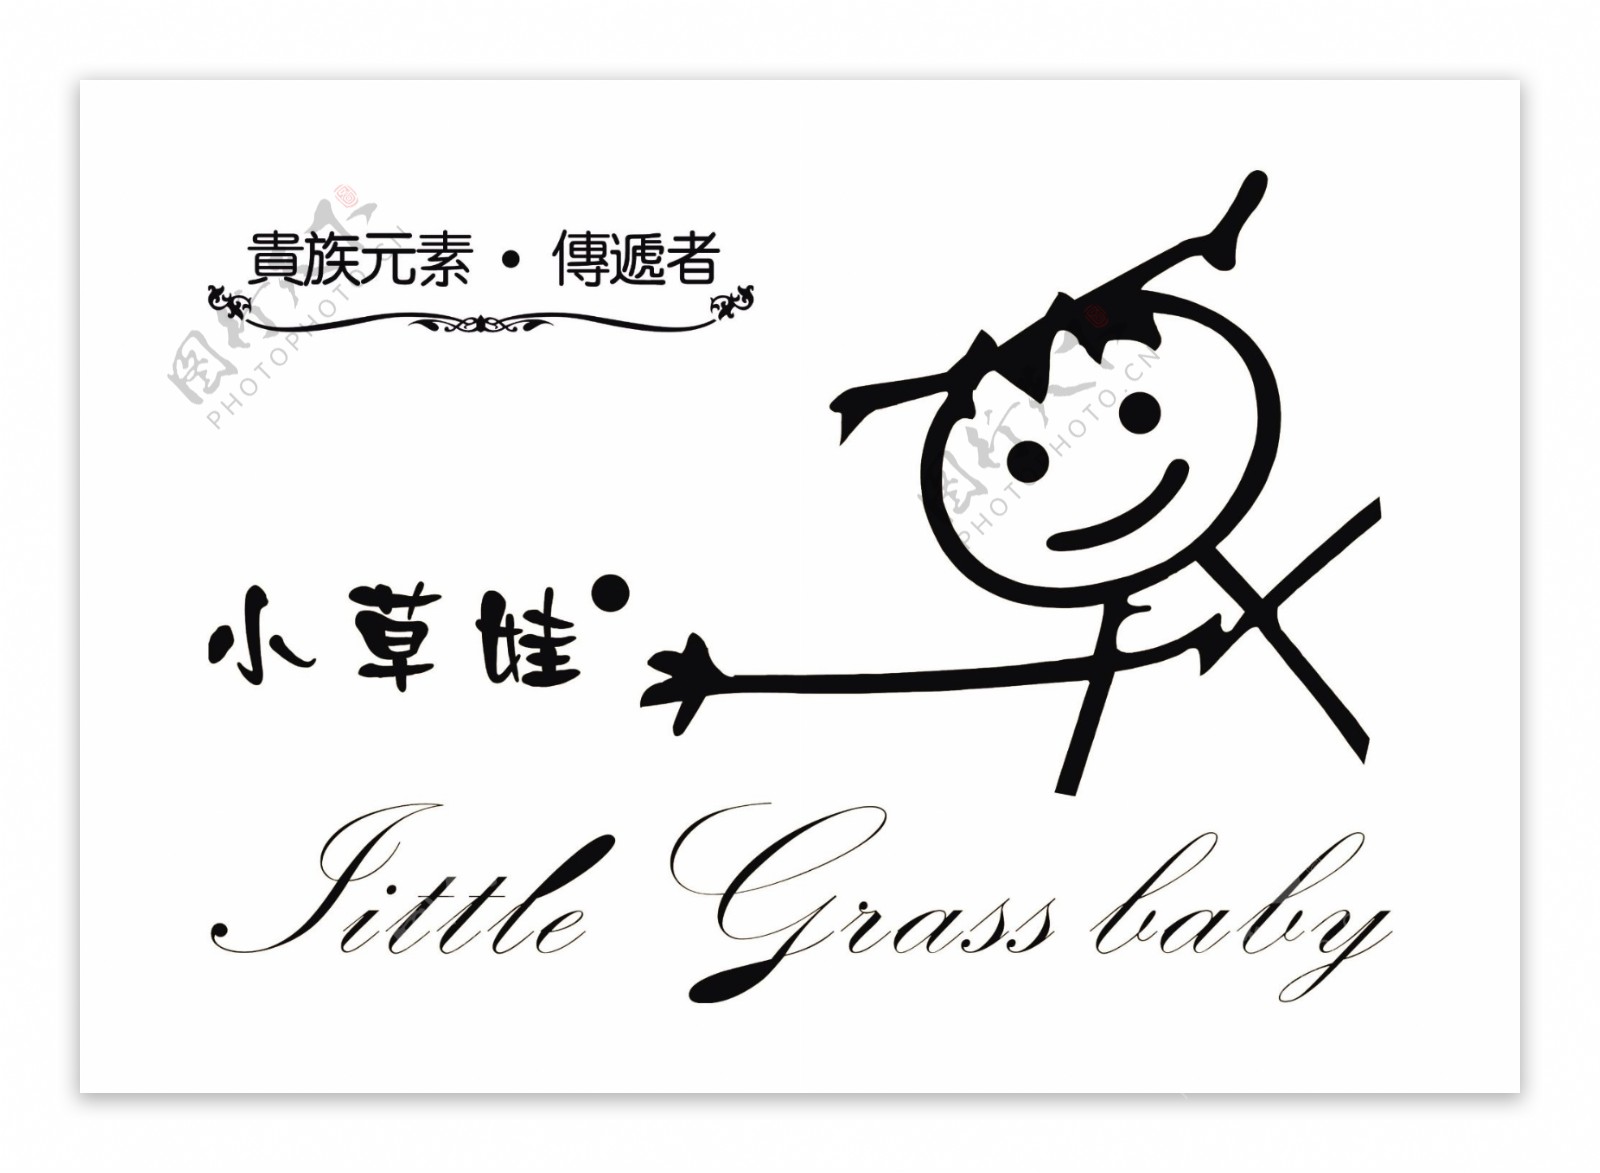 小草娃黑白logo图片